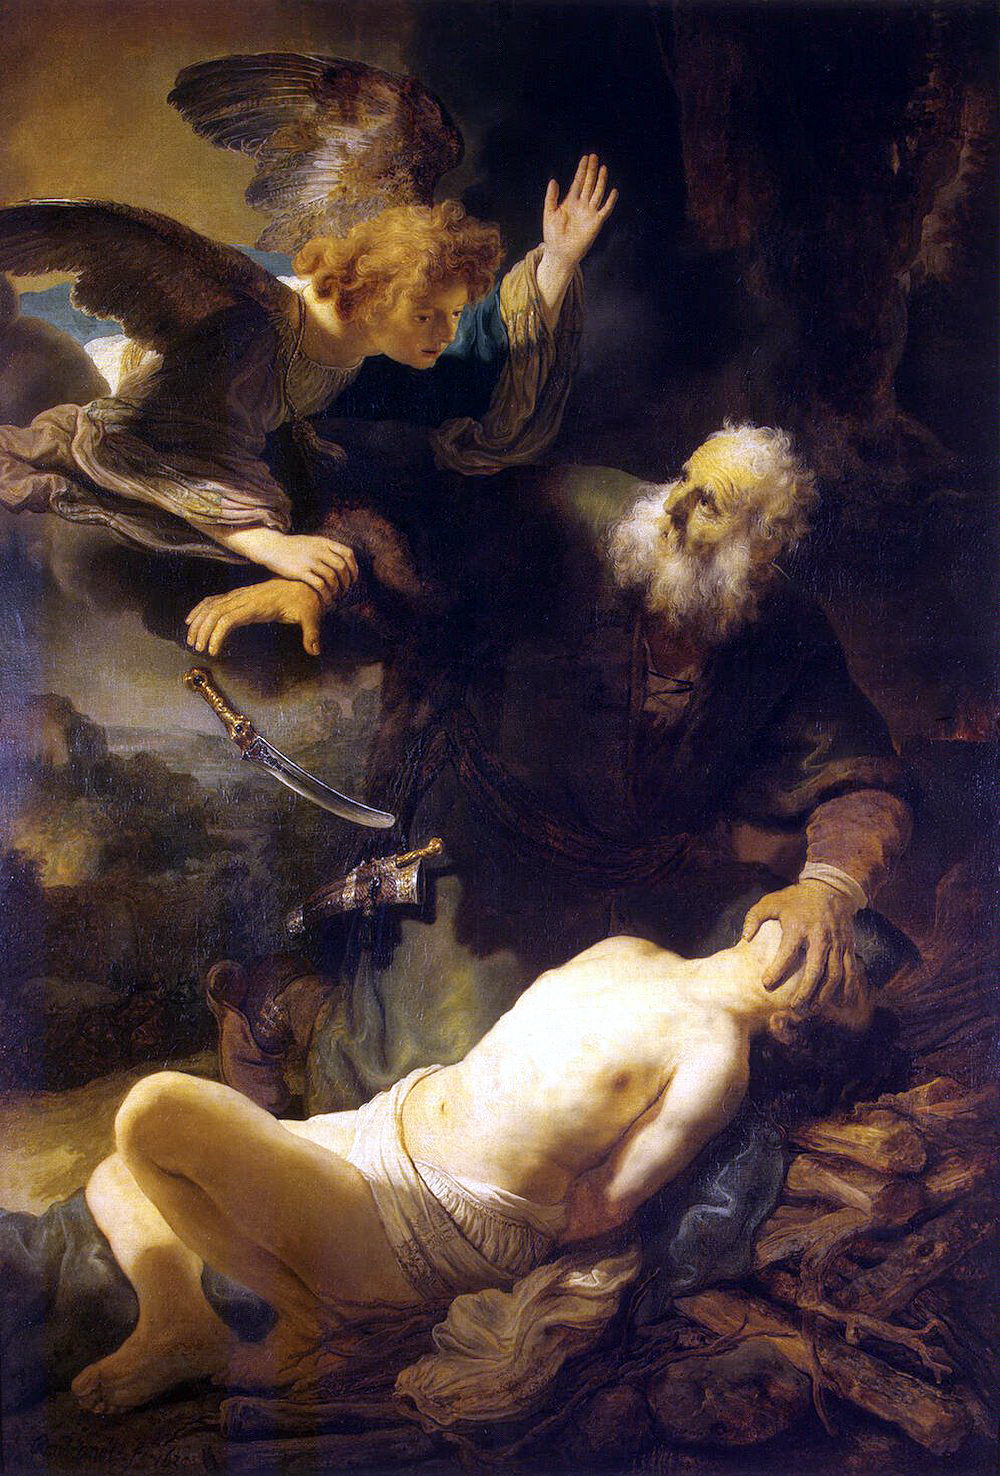 Рембрандт Харменс ван Рейн. "Жертвоприношение Авраама". 1635.